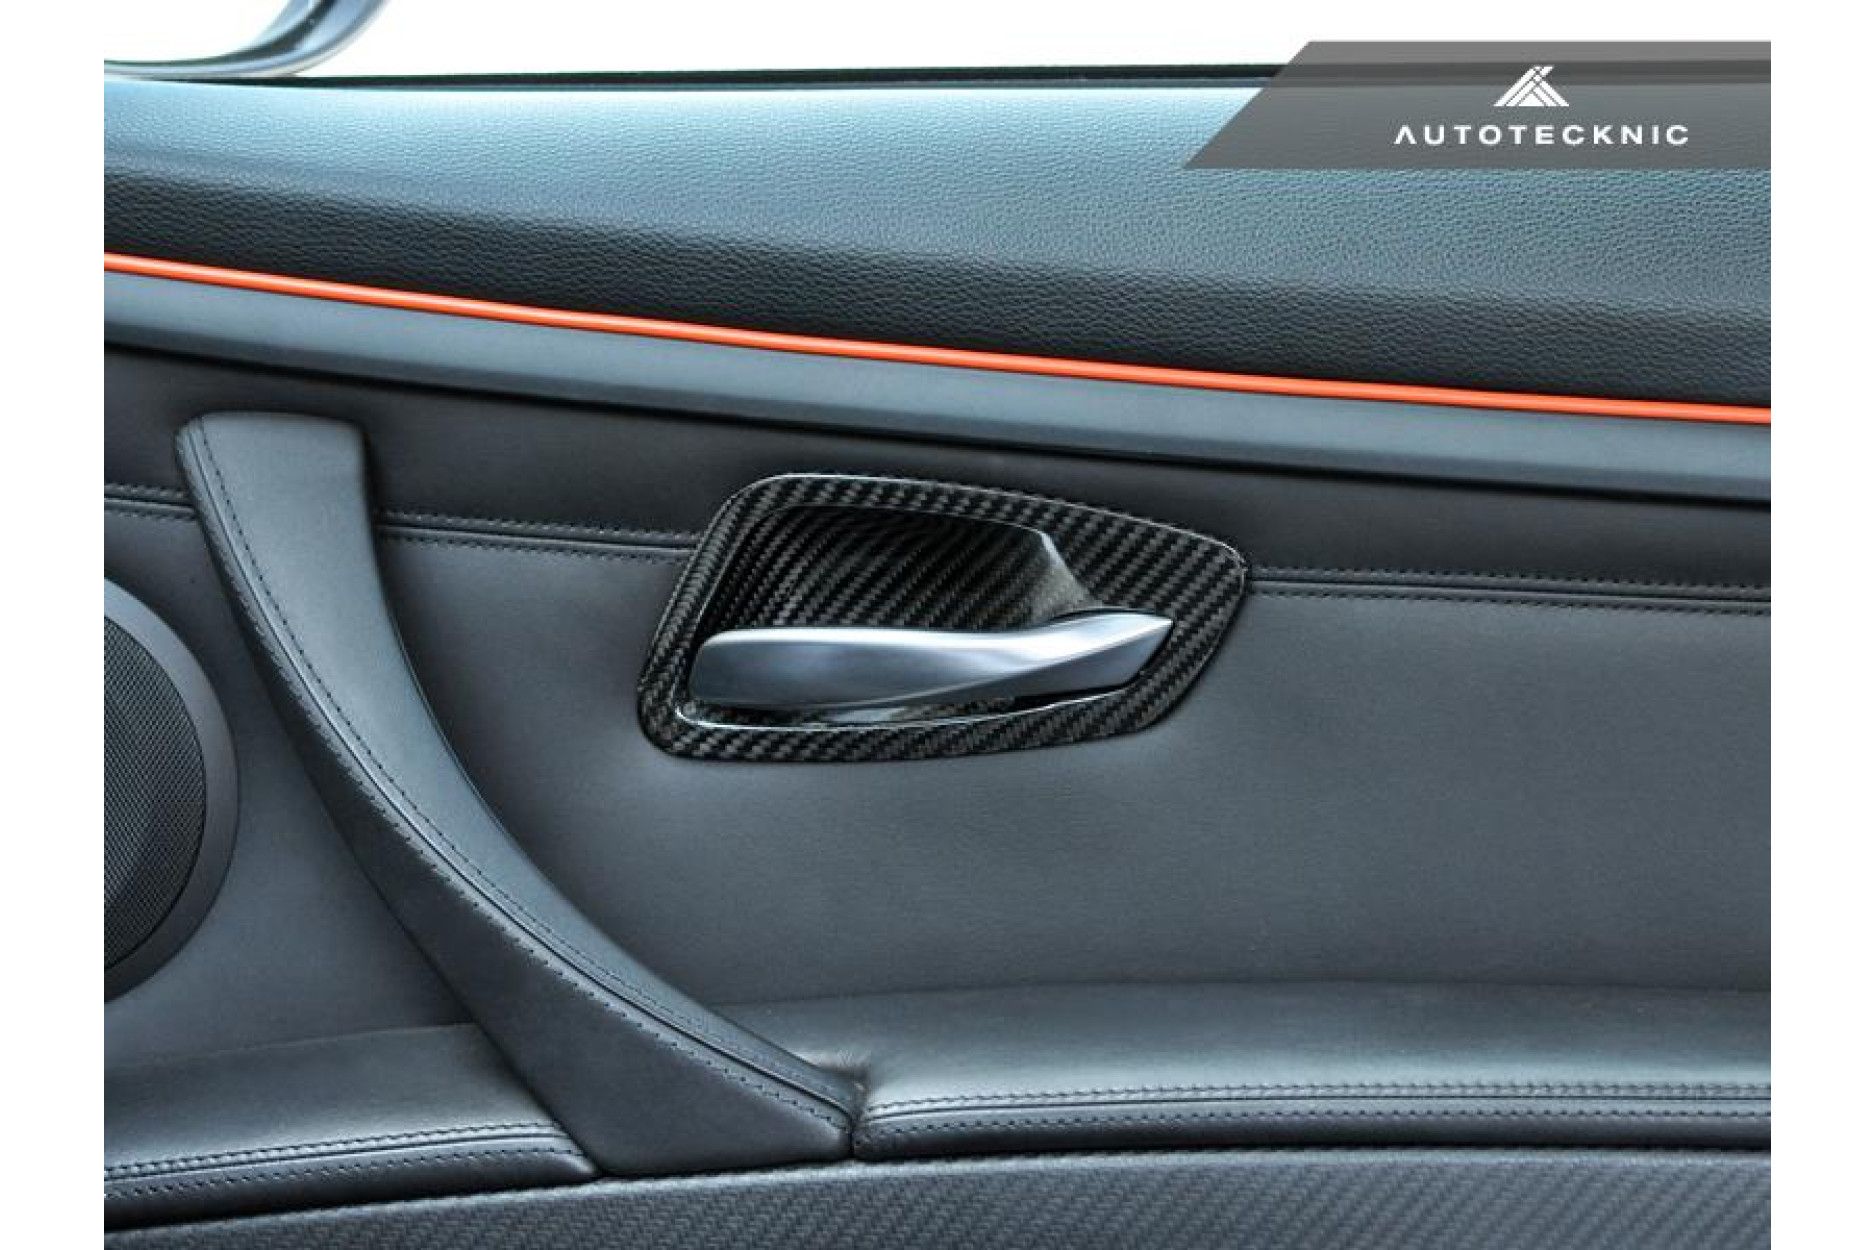 AutoTecknic Trockencarbon Innentürgriff-Verkleidung für BMW 3er E92